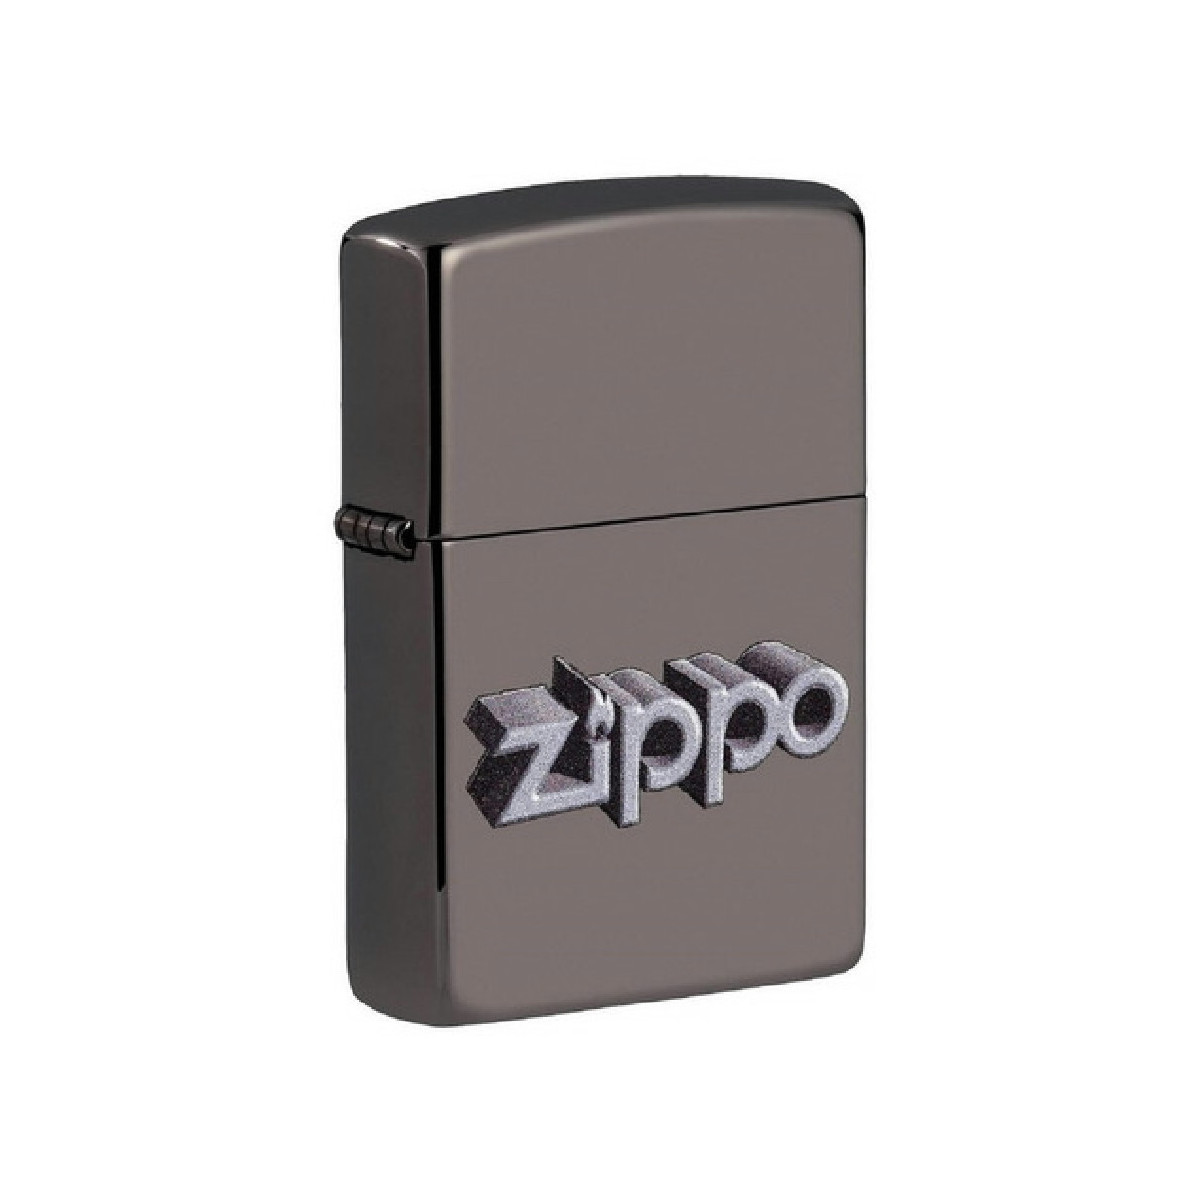 Encendeor Zippo Design - 49417